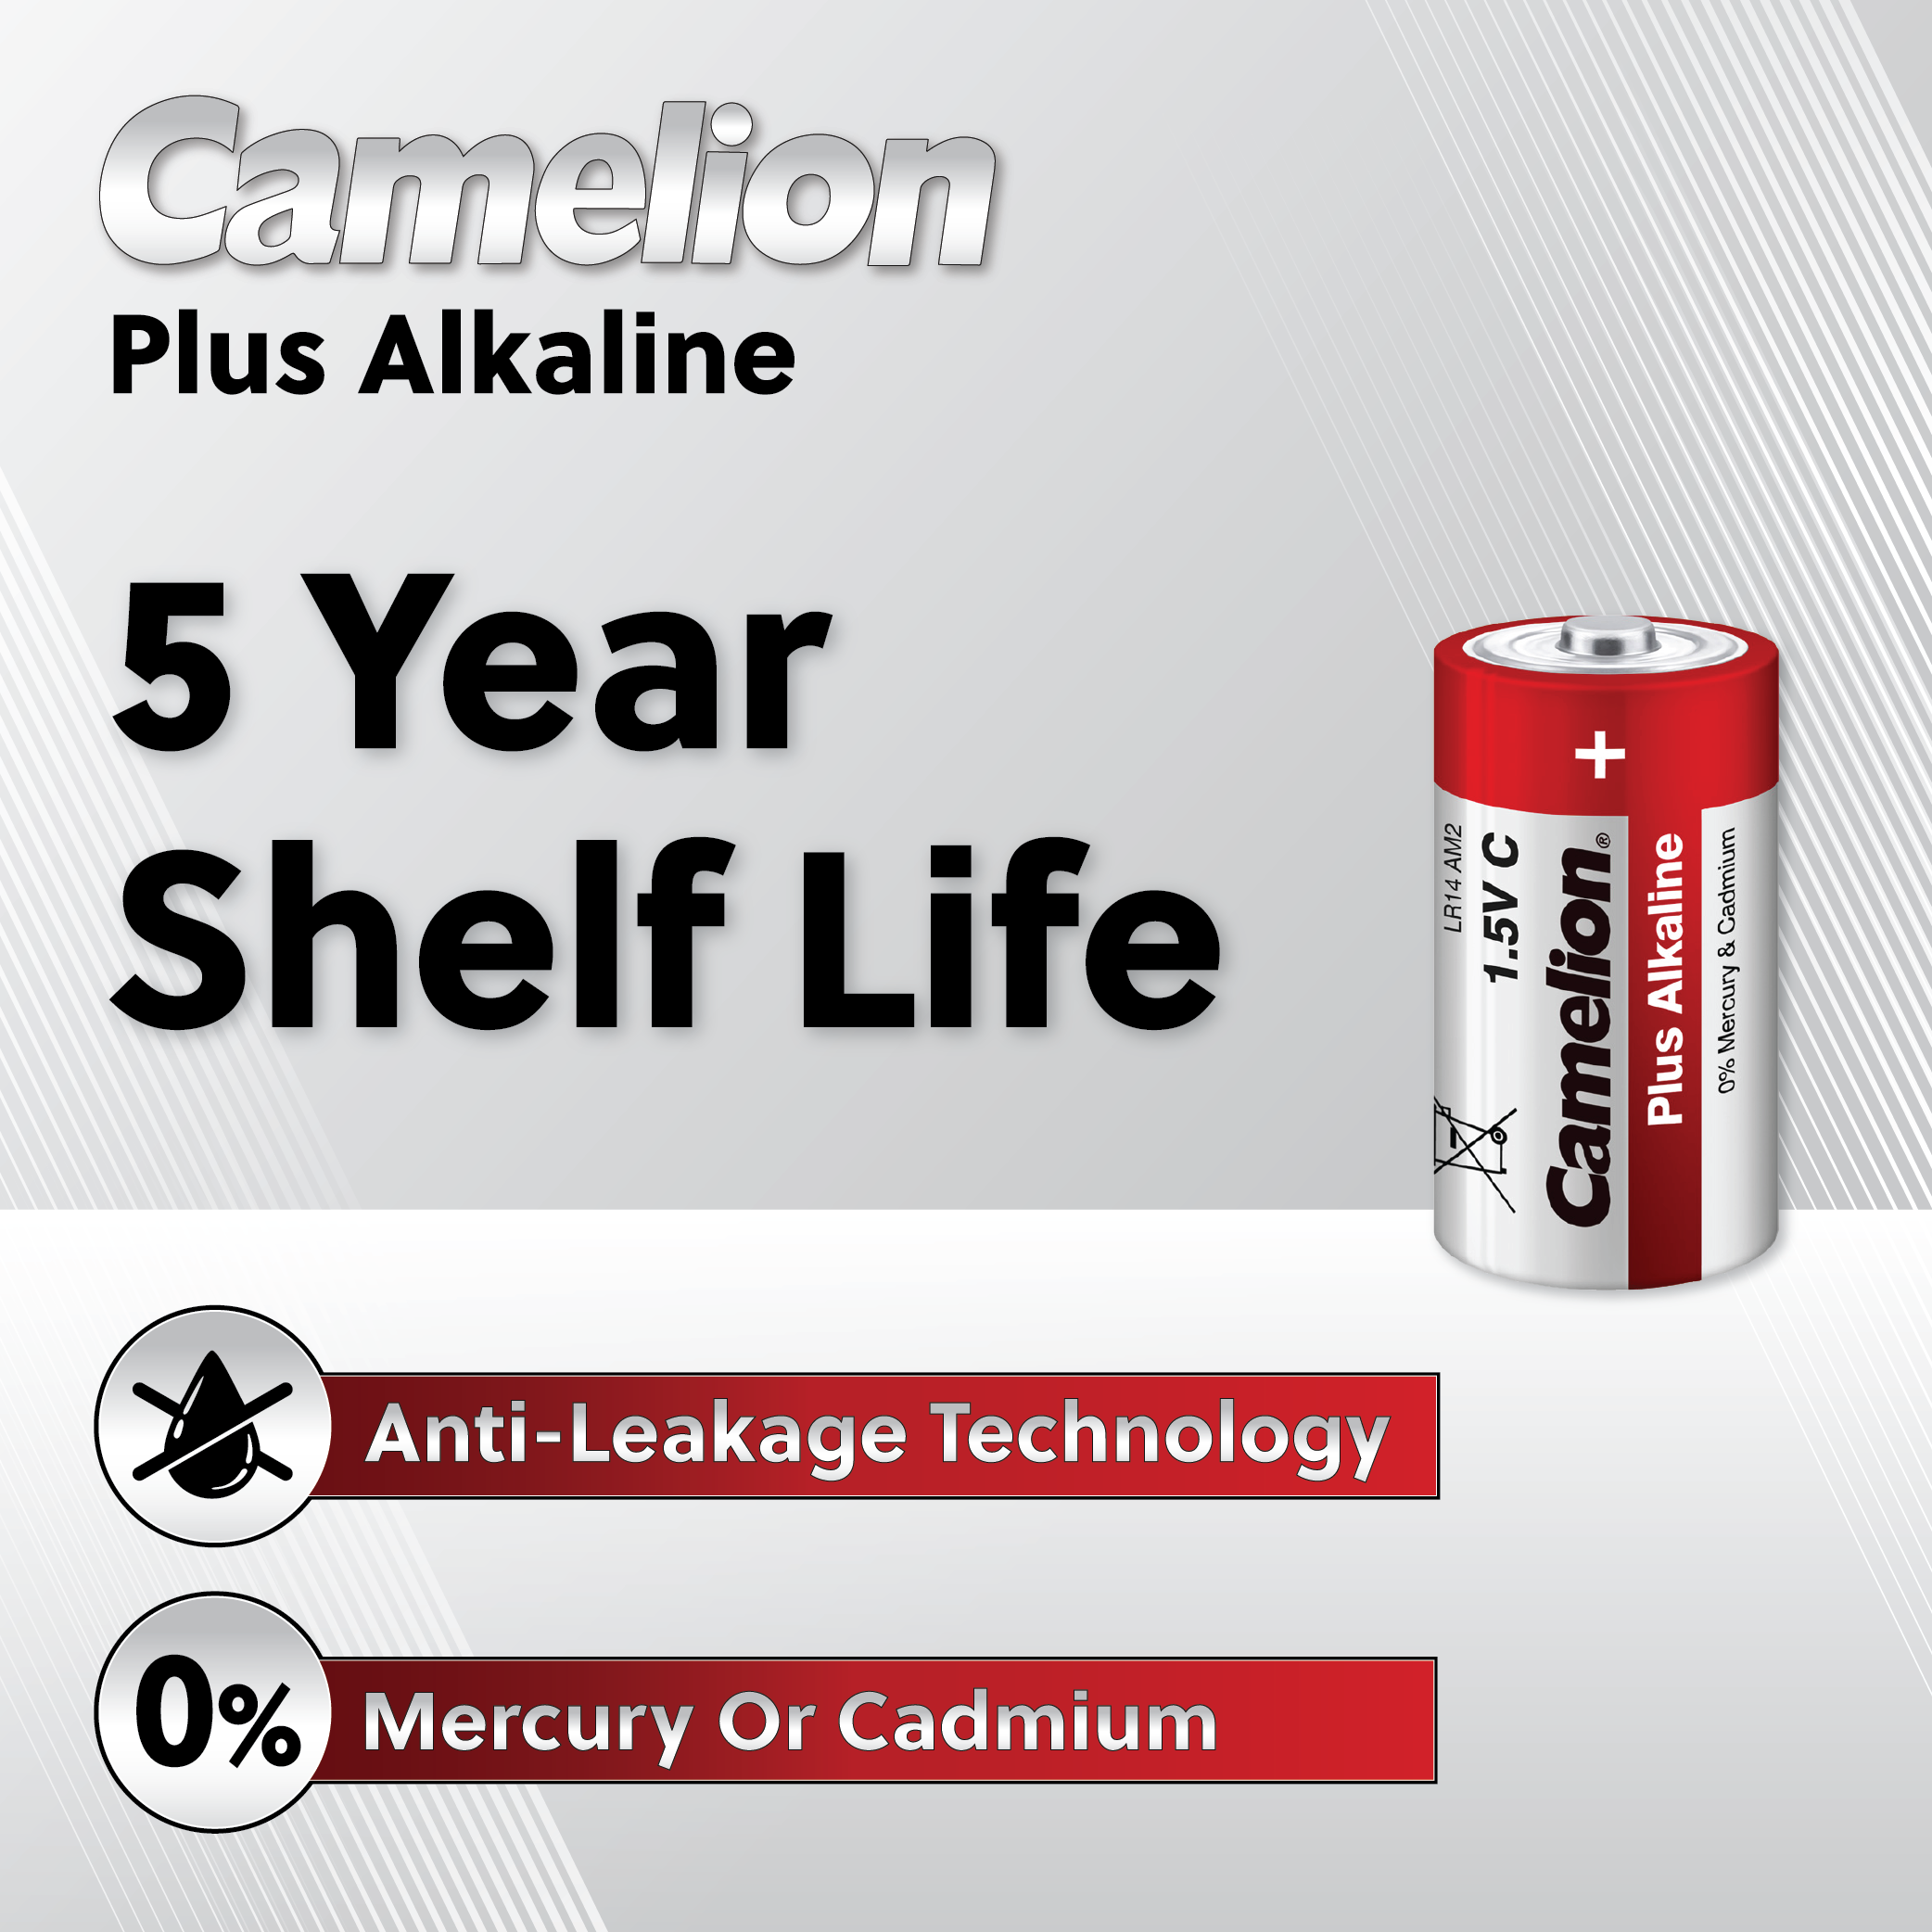 Alkaline battery A27 12V 2-blister